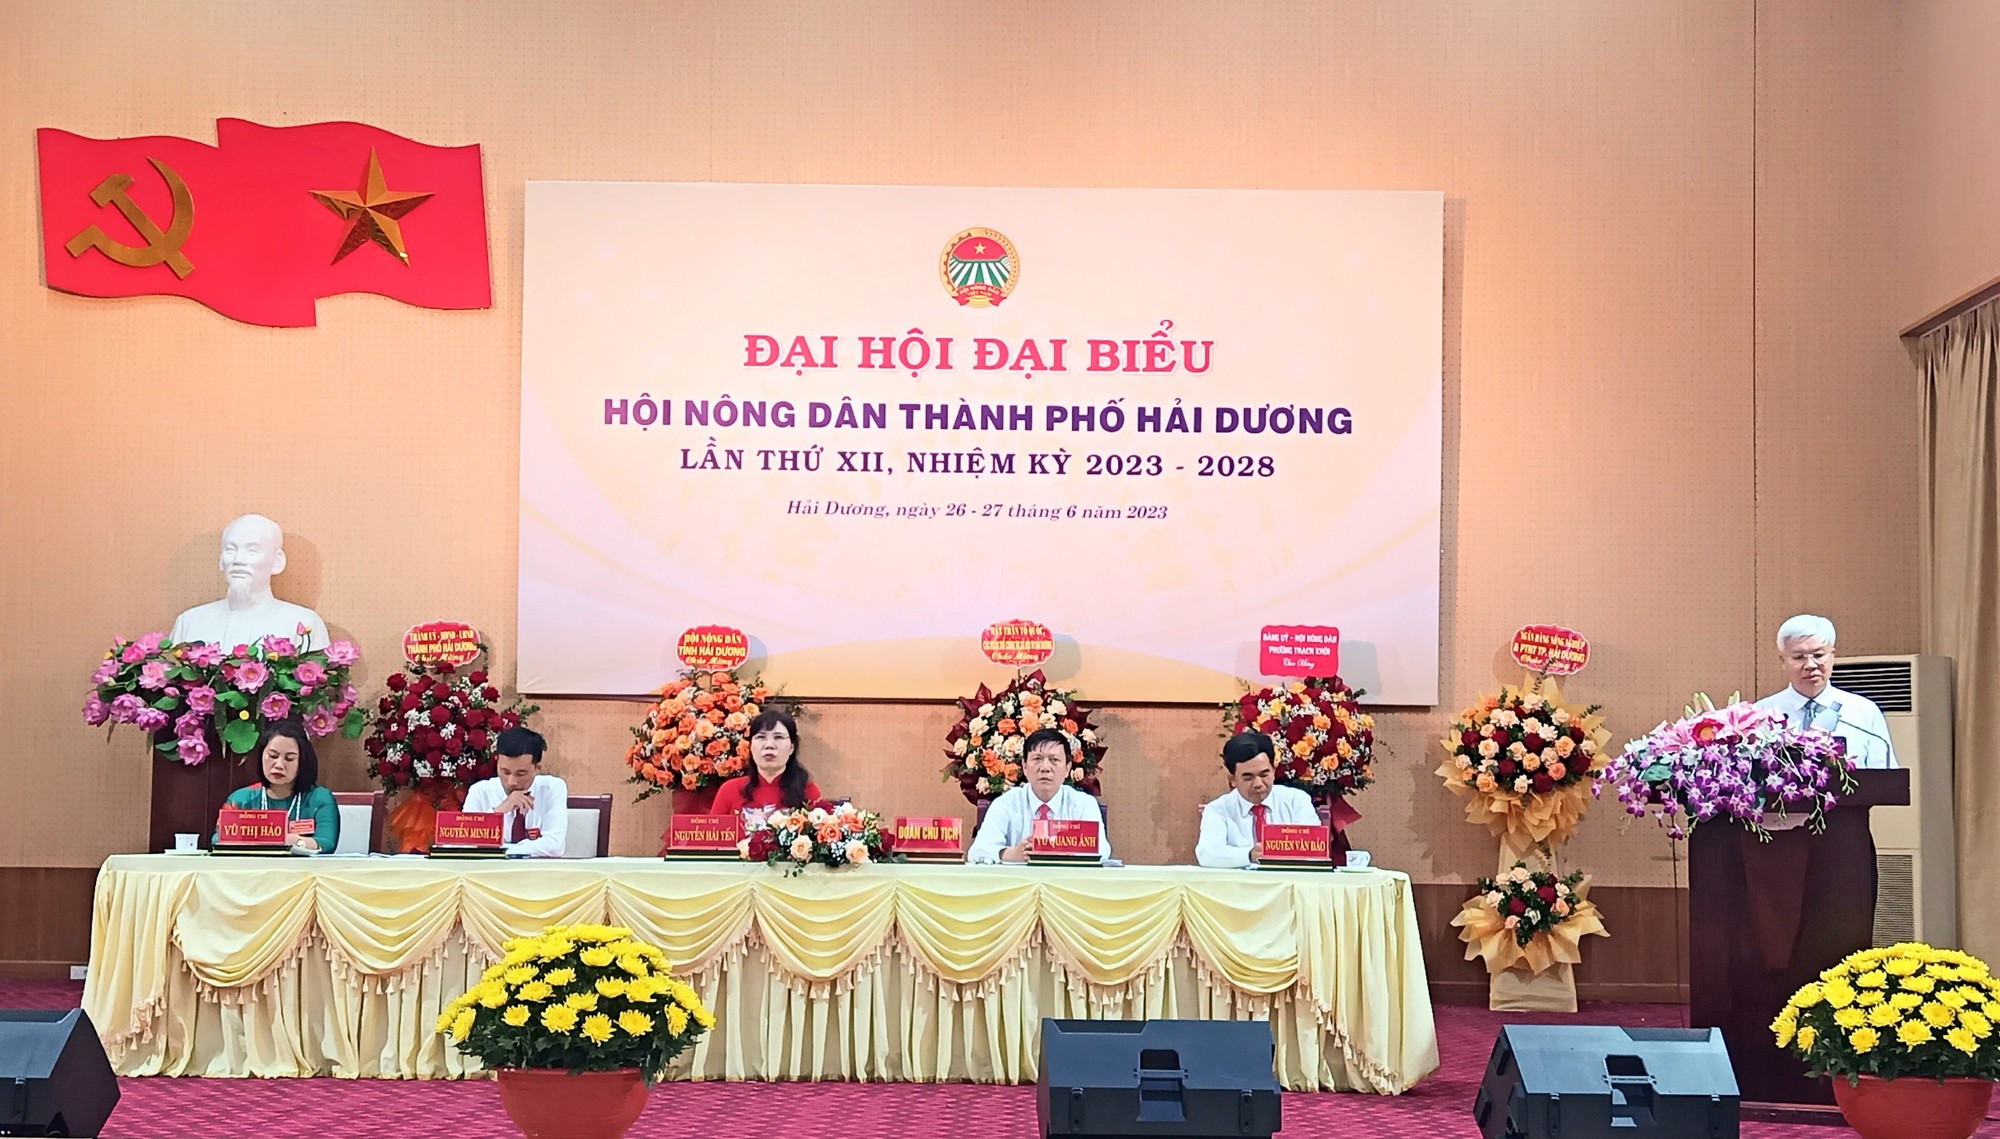 Đại hội Đại biểu Hội nông dân TP Hải Dương, bà Nguyễn Hải Yến tái đắc cử chức Chủ tịch - Ảnh 1.